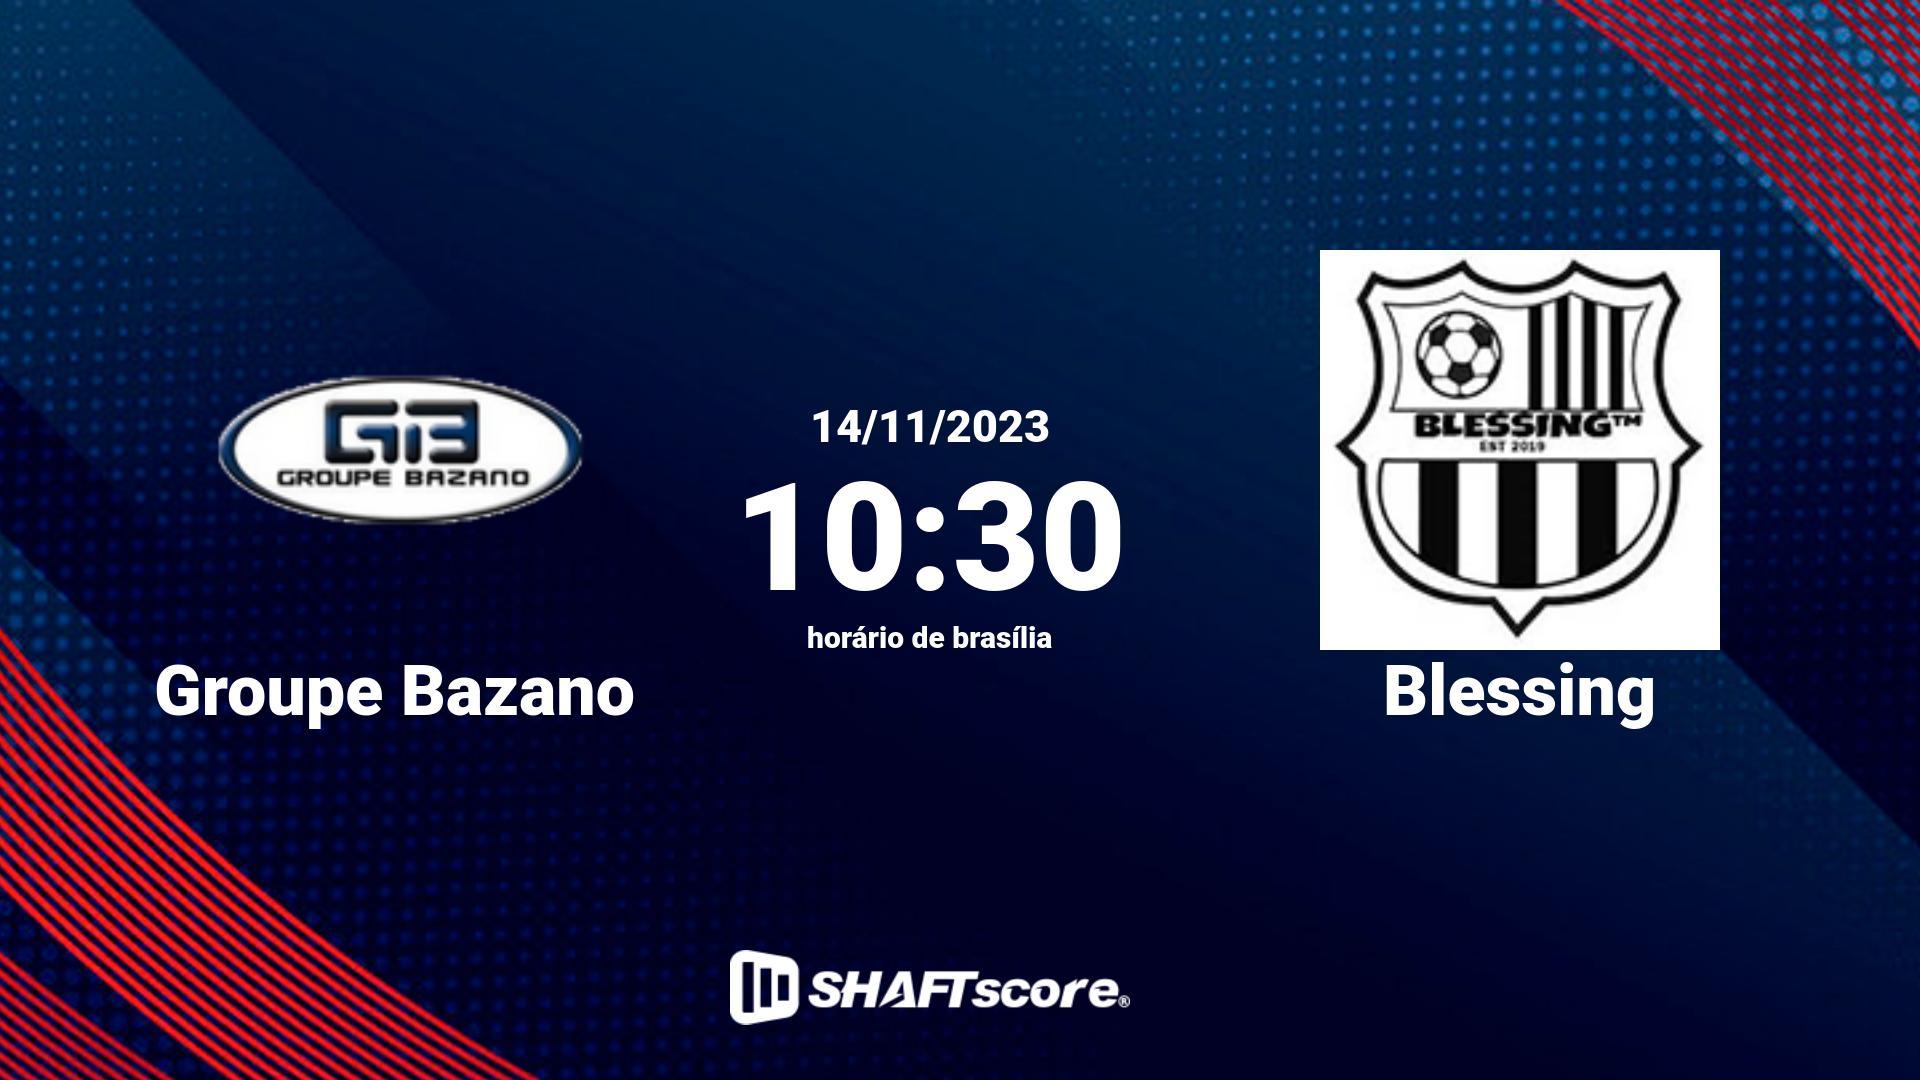 Estatísticas do jogo Groupe Bazano vs Blessing 14.11 10:30